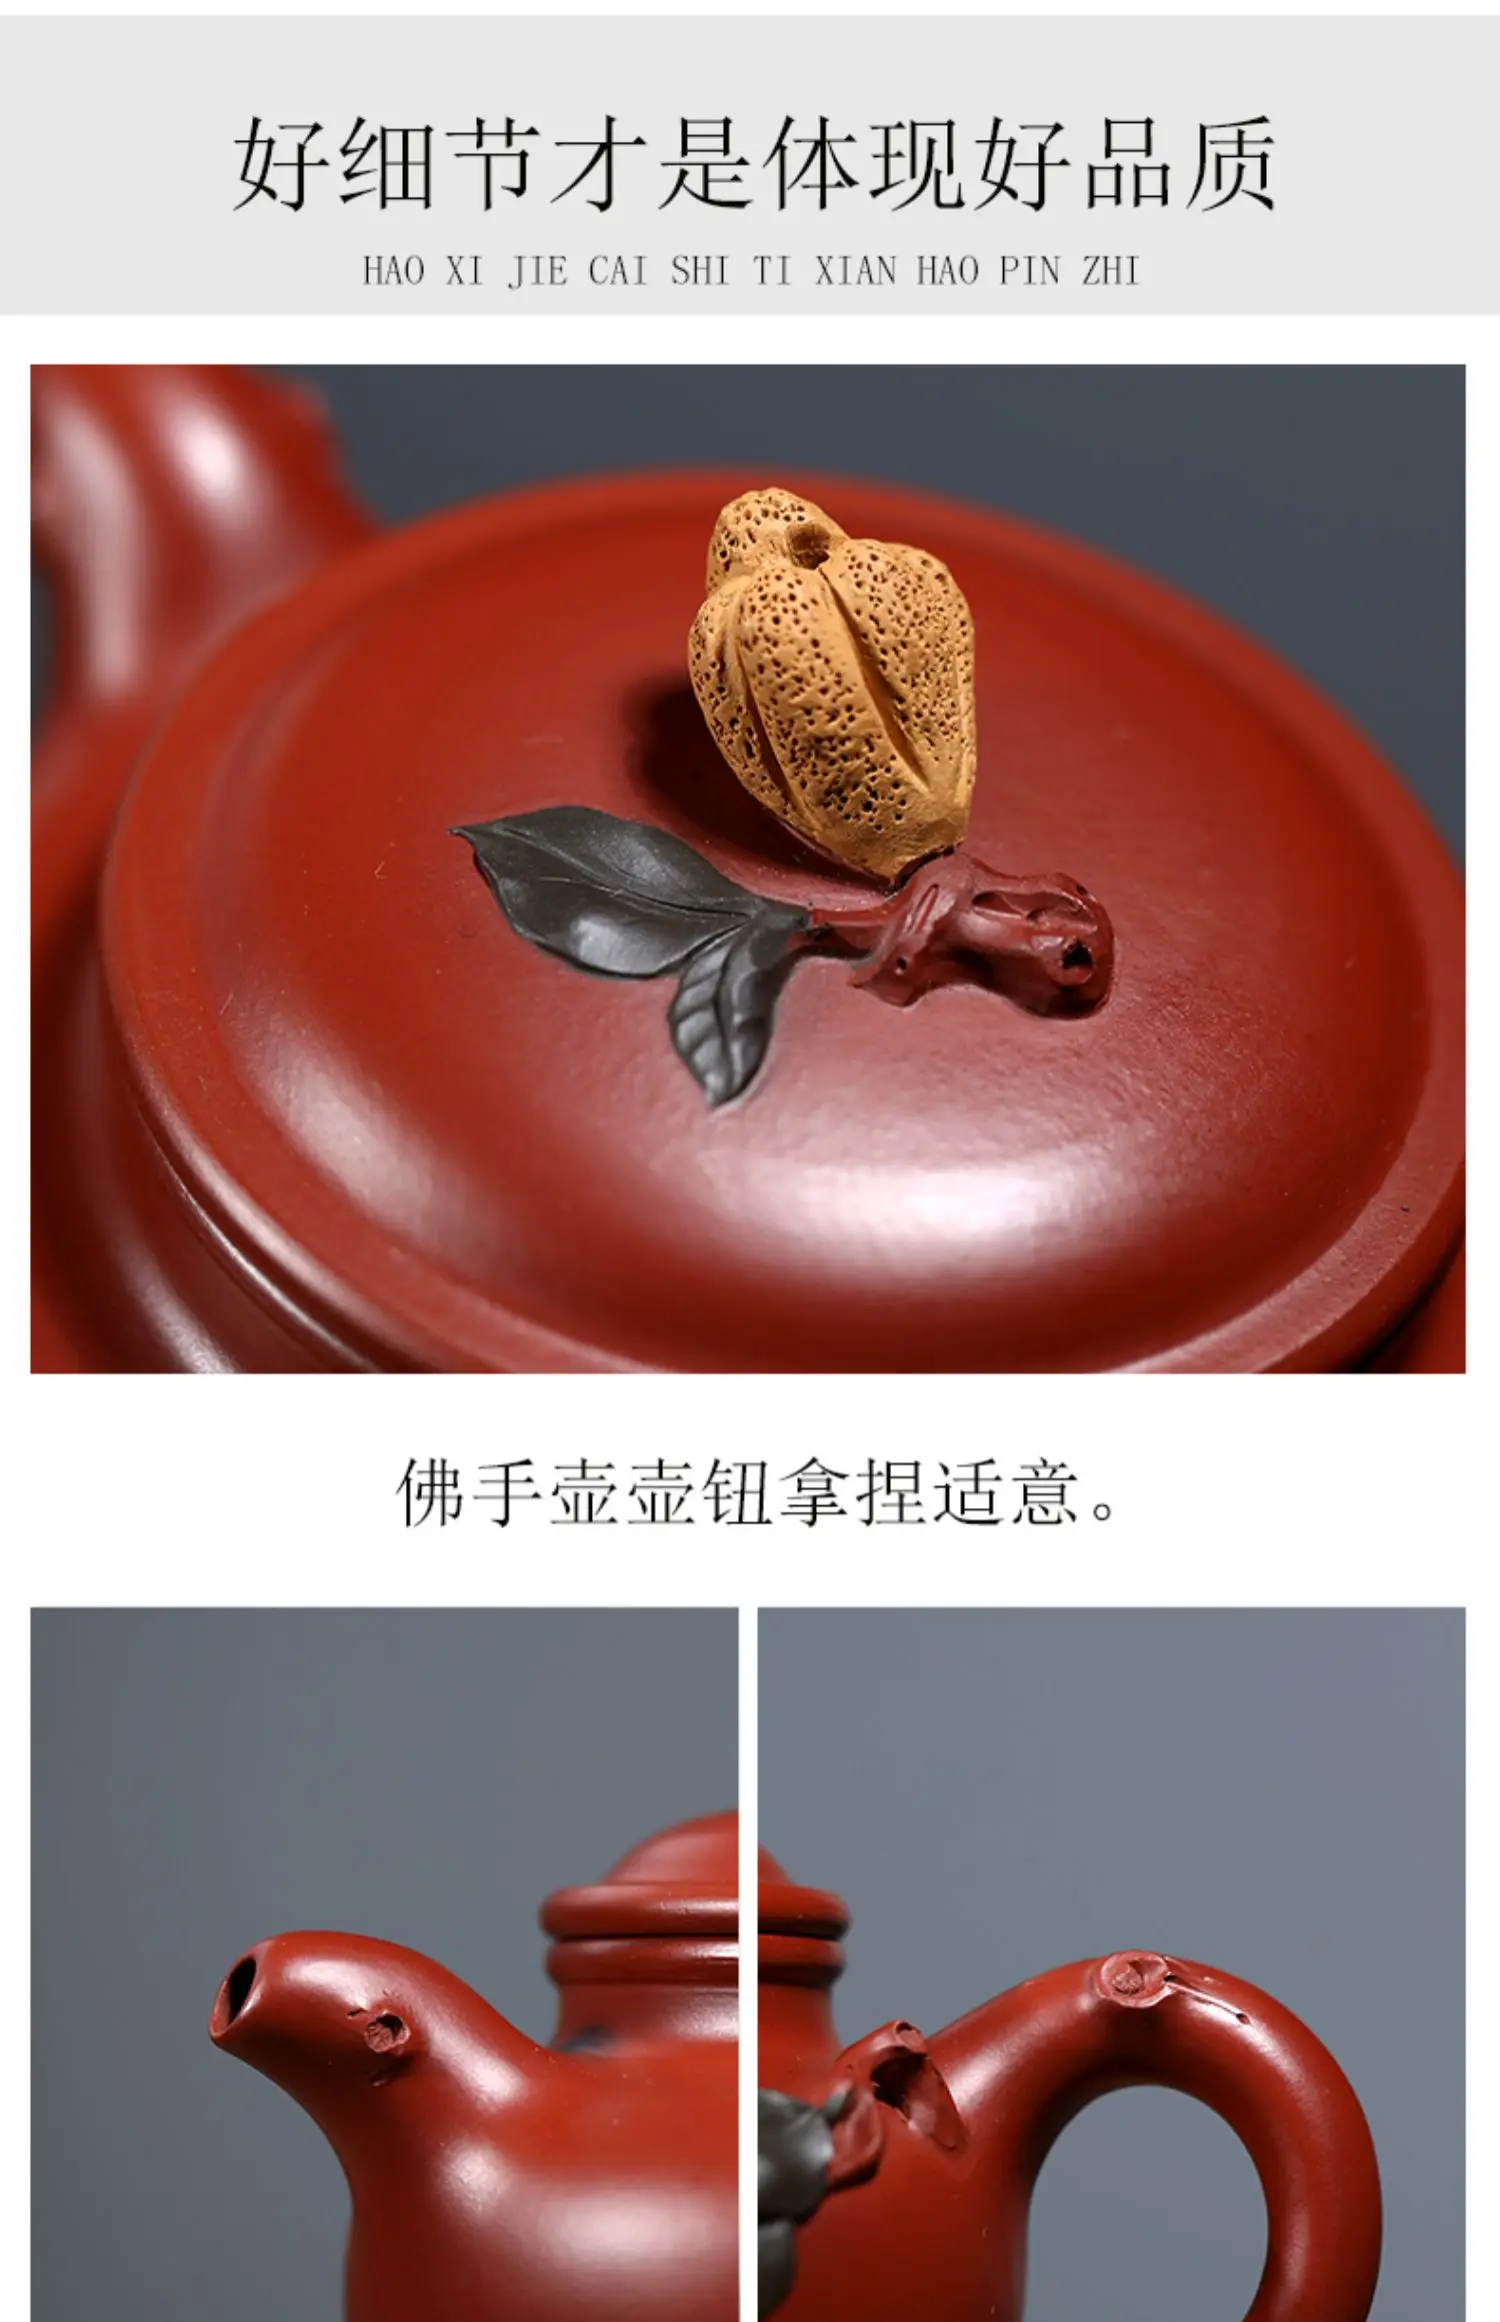 Recomendado puro manual gu jingzhou yixing roxo